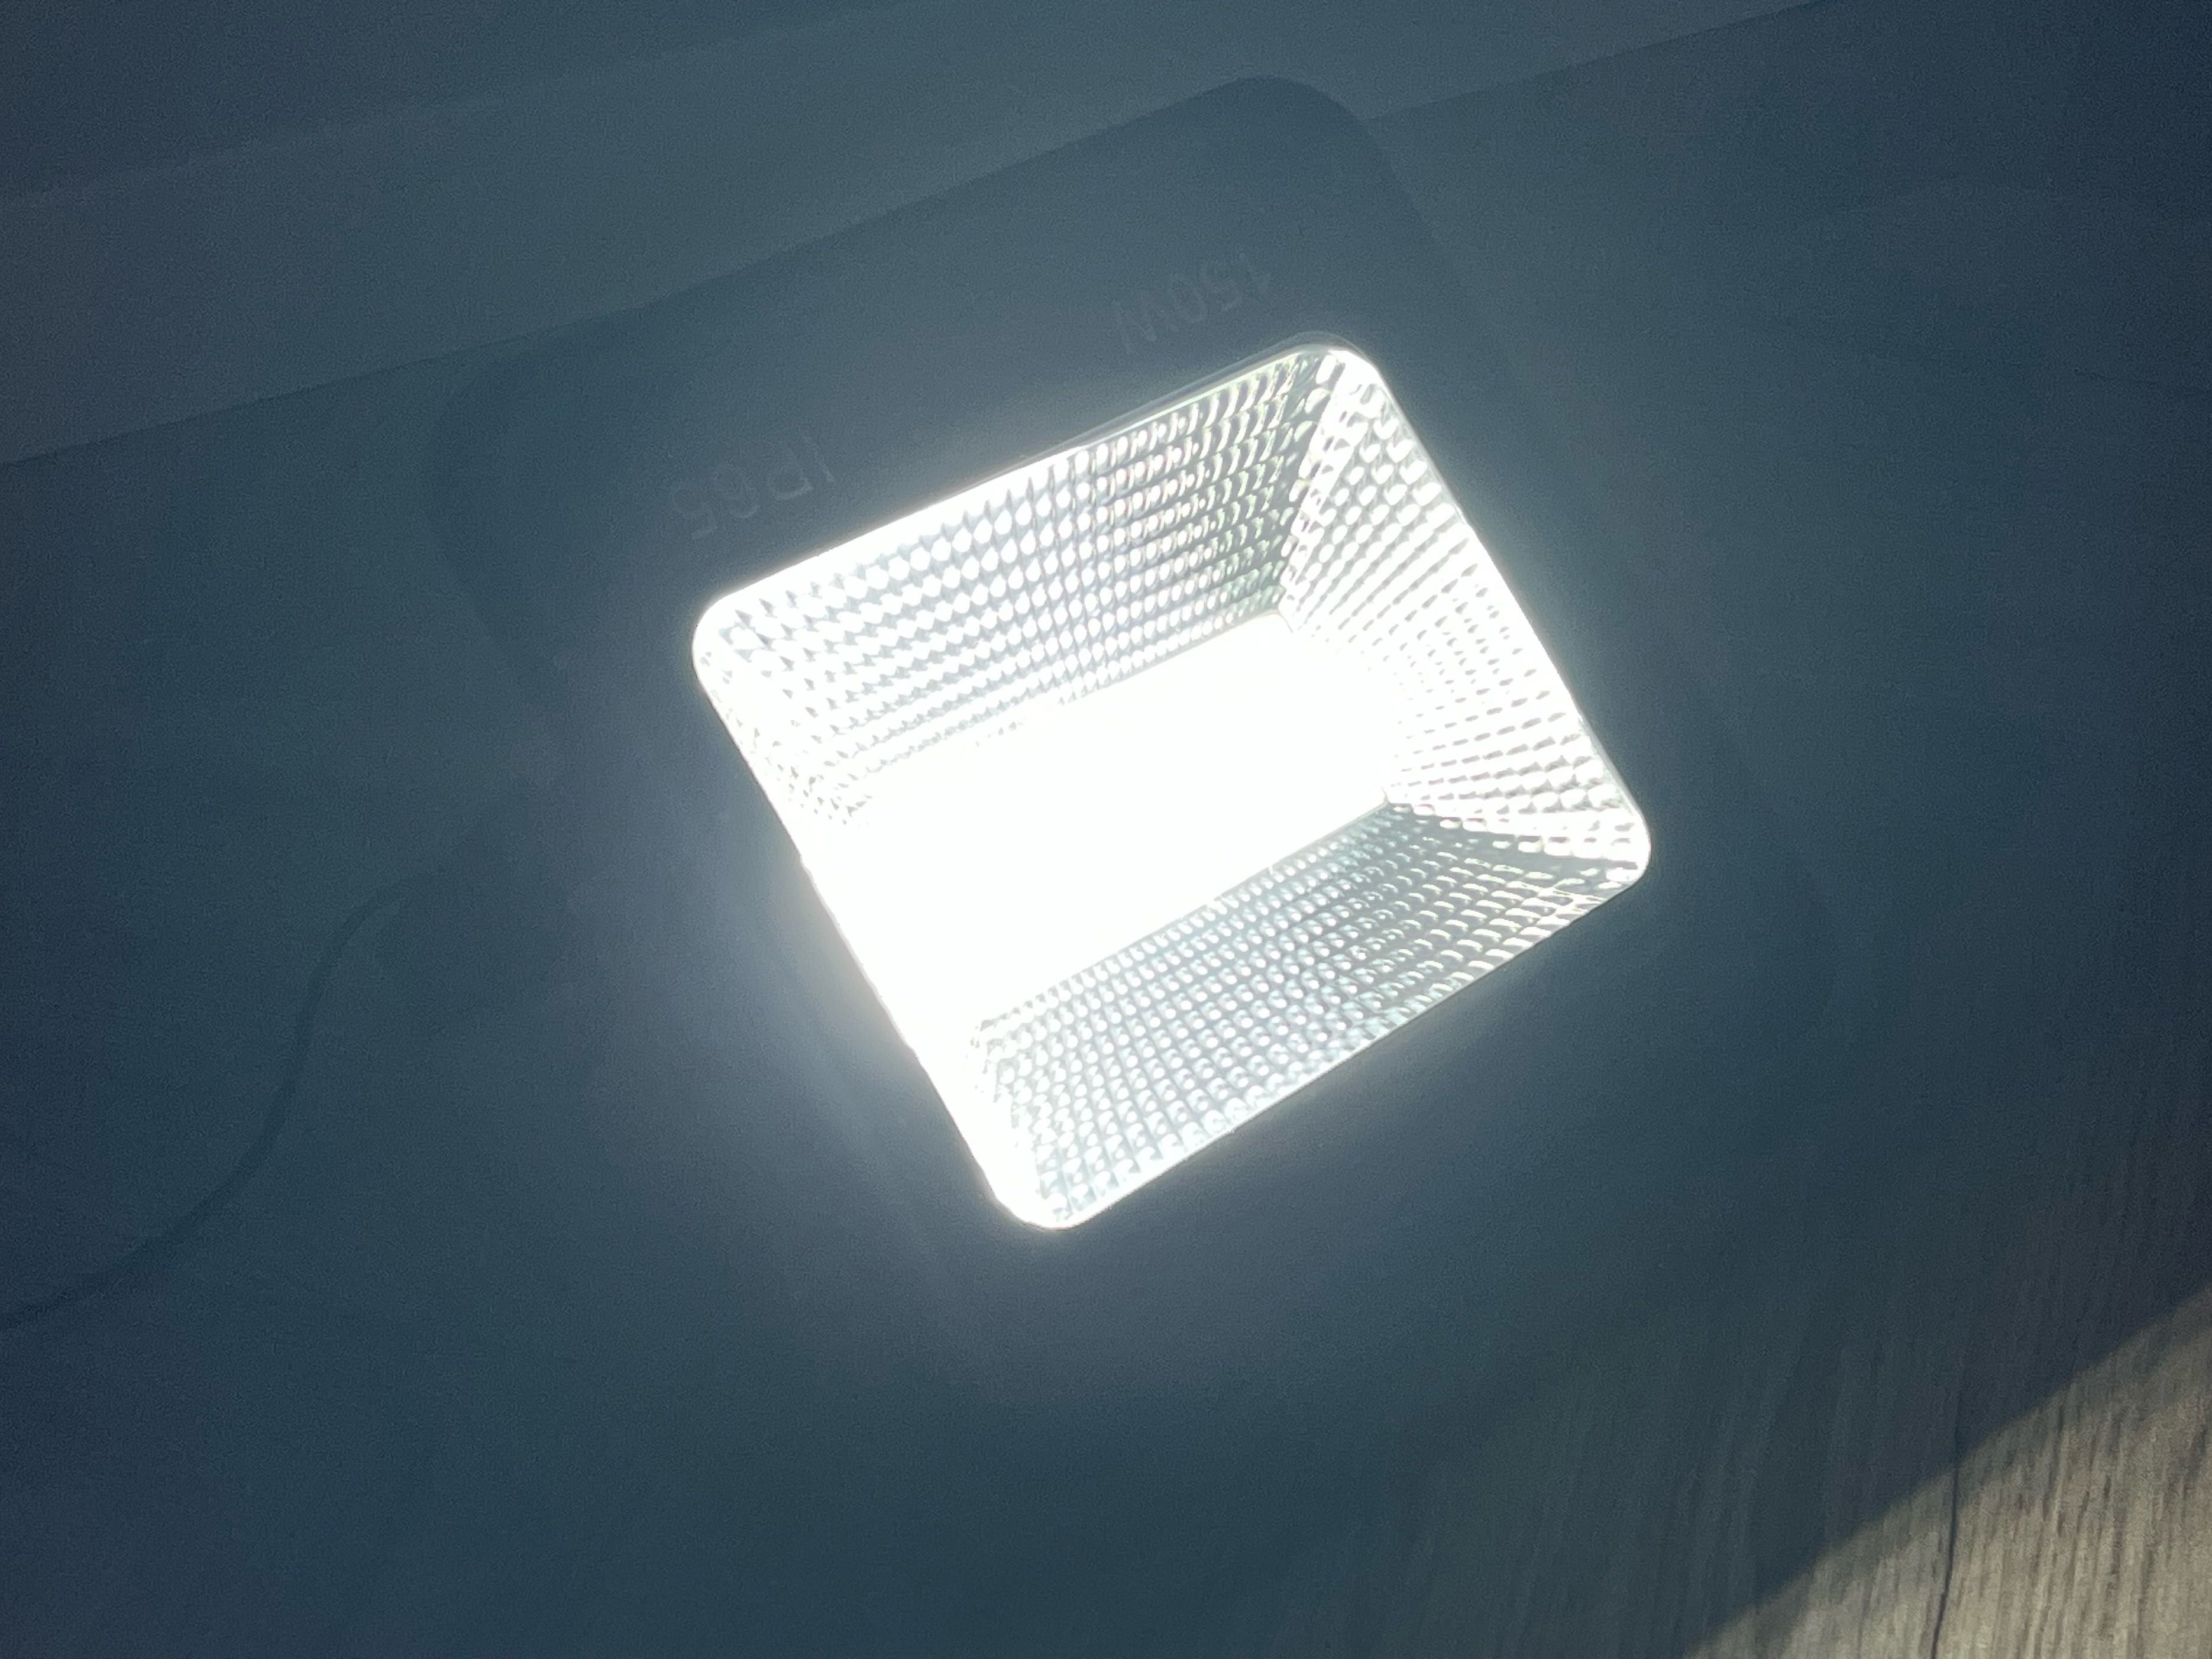 Proiector LED Hoff 150W